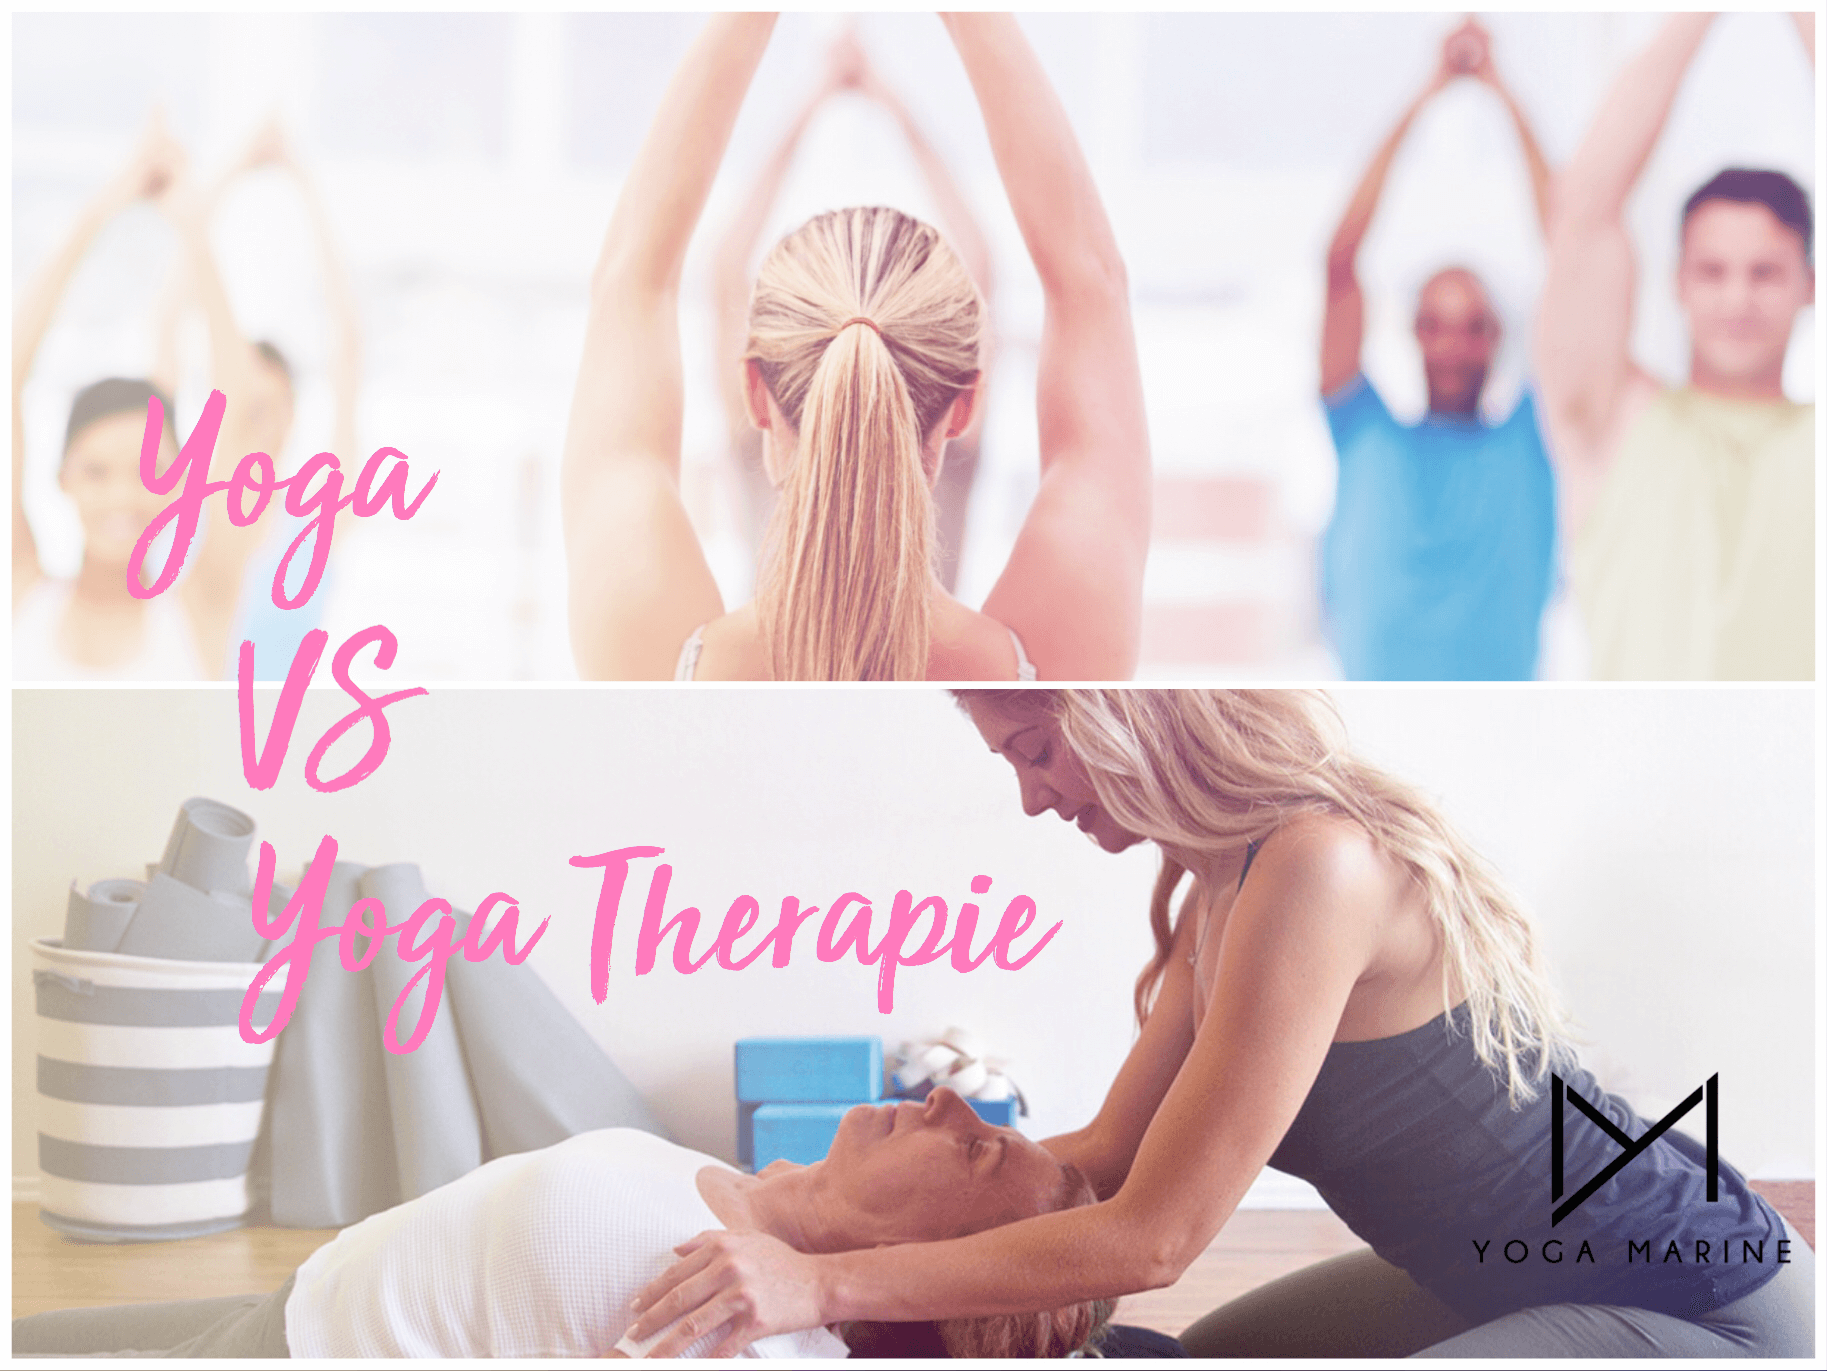 yoga VS Yoga thérapie avec Marine. On voit une jeune femme réaliser un soin à une personne plus agée